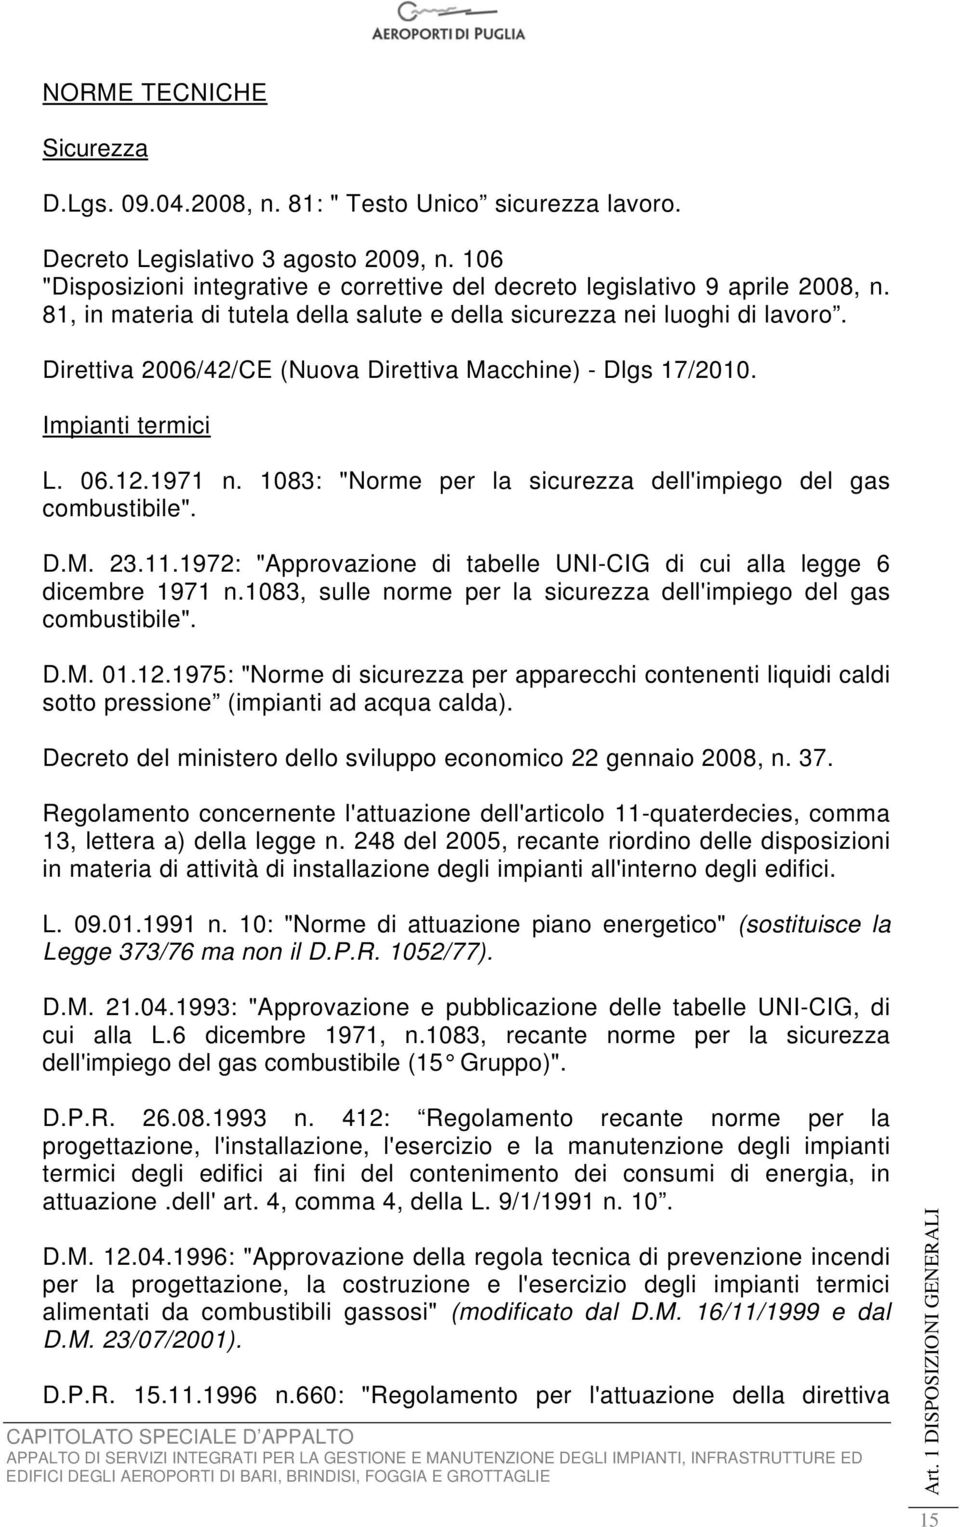 Direttiva 2006/42/CE (Nuova Direttiva Macchine) - Dlgs 17/2010. Impianti termici L. 06.12.1971 n. 1083: "Norme per la sicurezza dell'impiego del gas combustibile". D.M. 23.11.